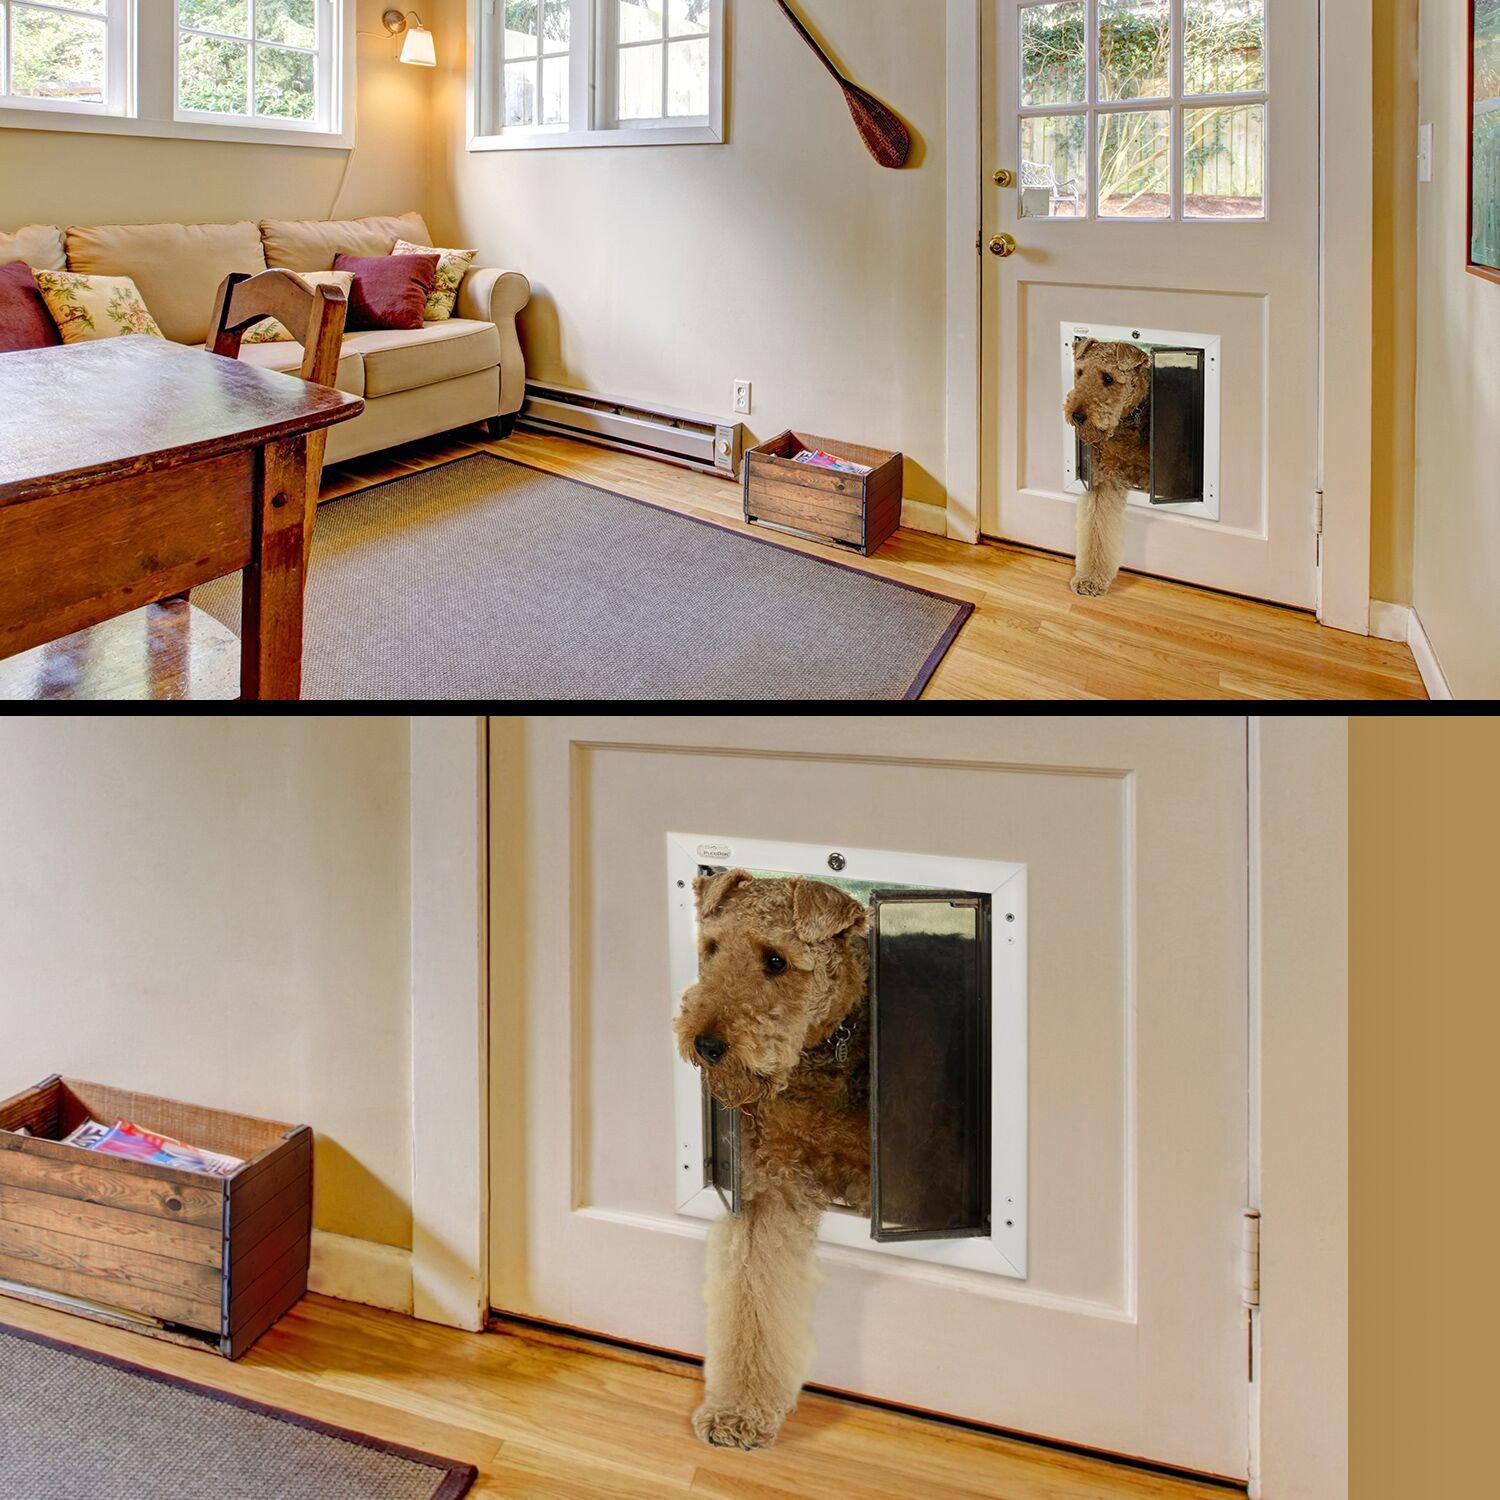 PlexiDor Performance Door Mount Installation Cat & Dog Door-Pet & Dog Doors-Pet's Choice Supply